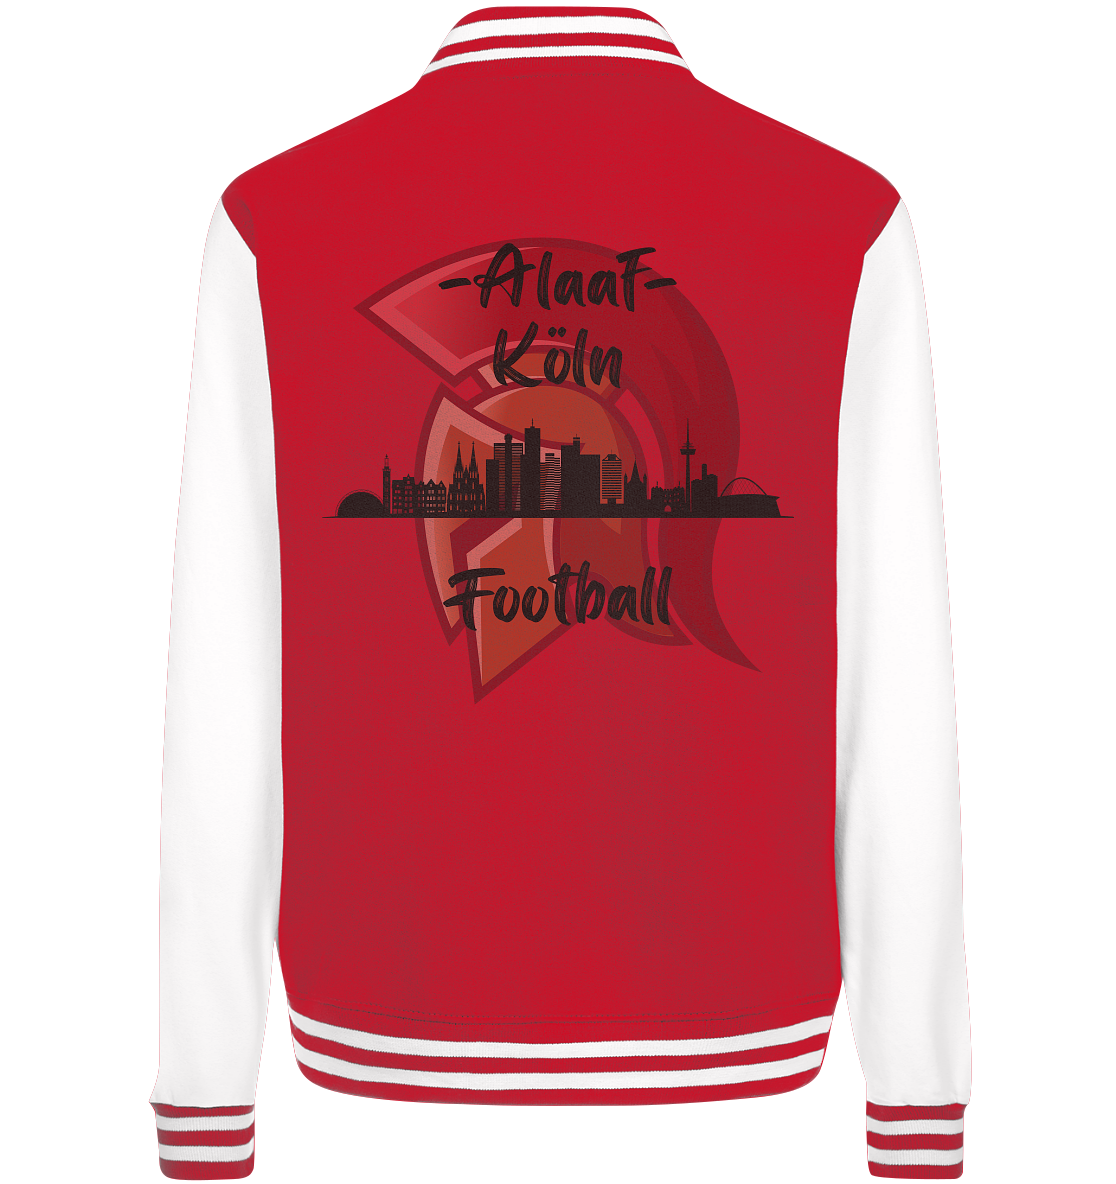 Alaaf - Köln Football - College Jacket - Football Unity Football Unity